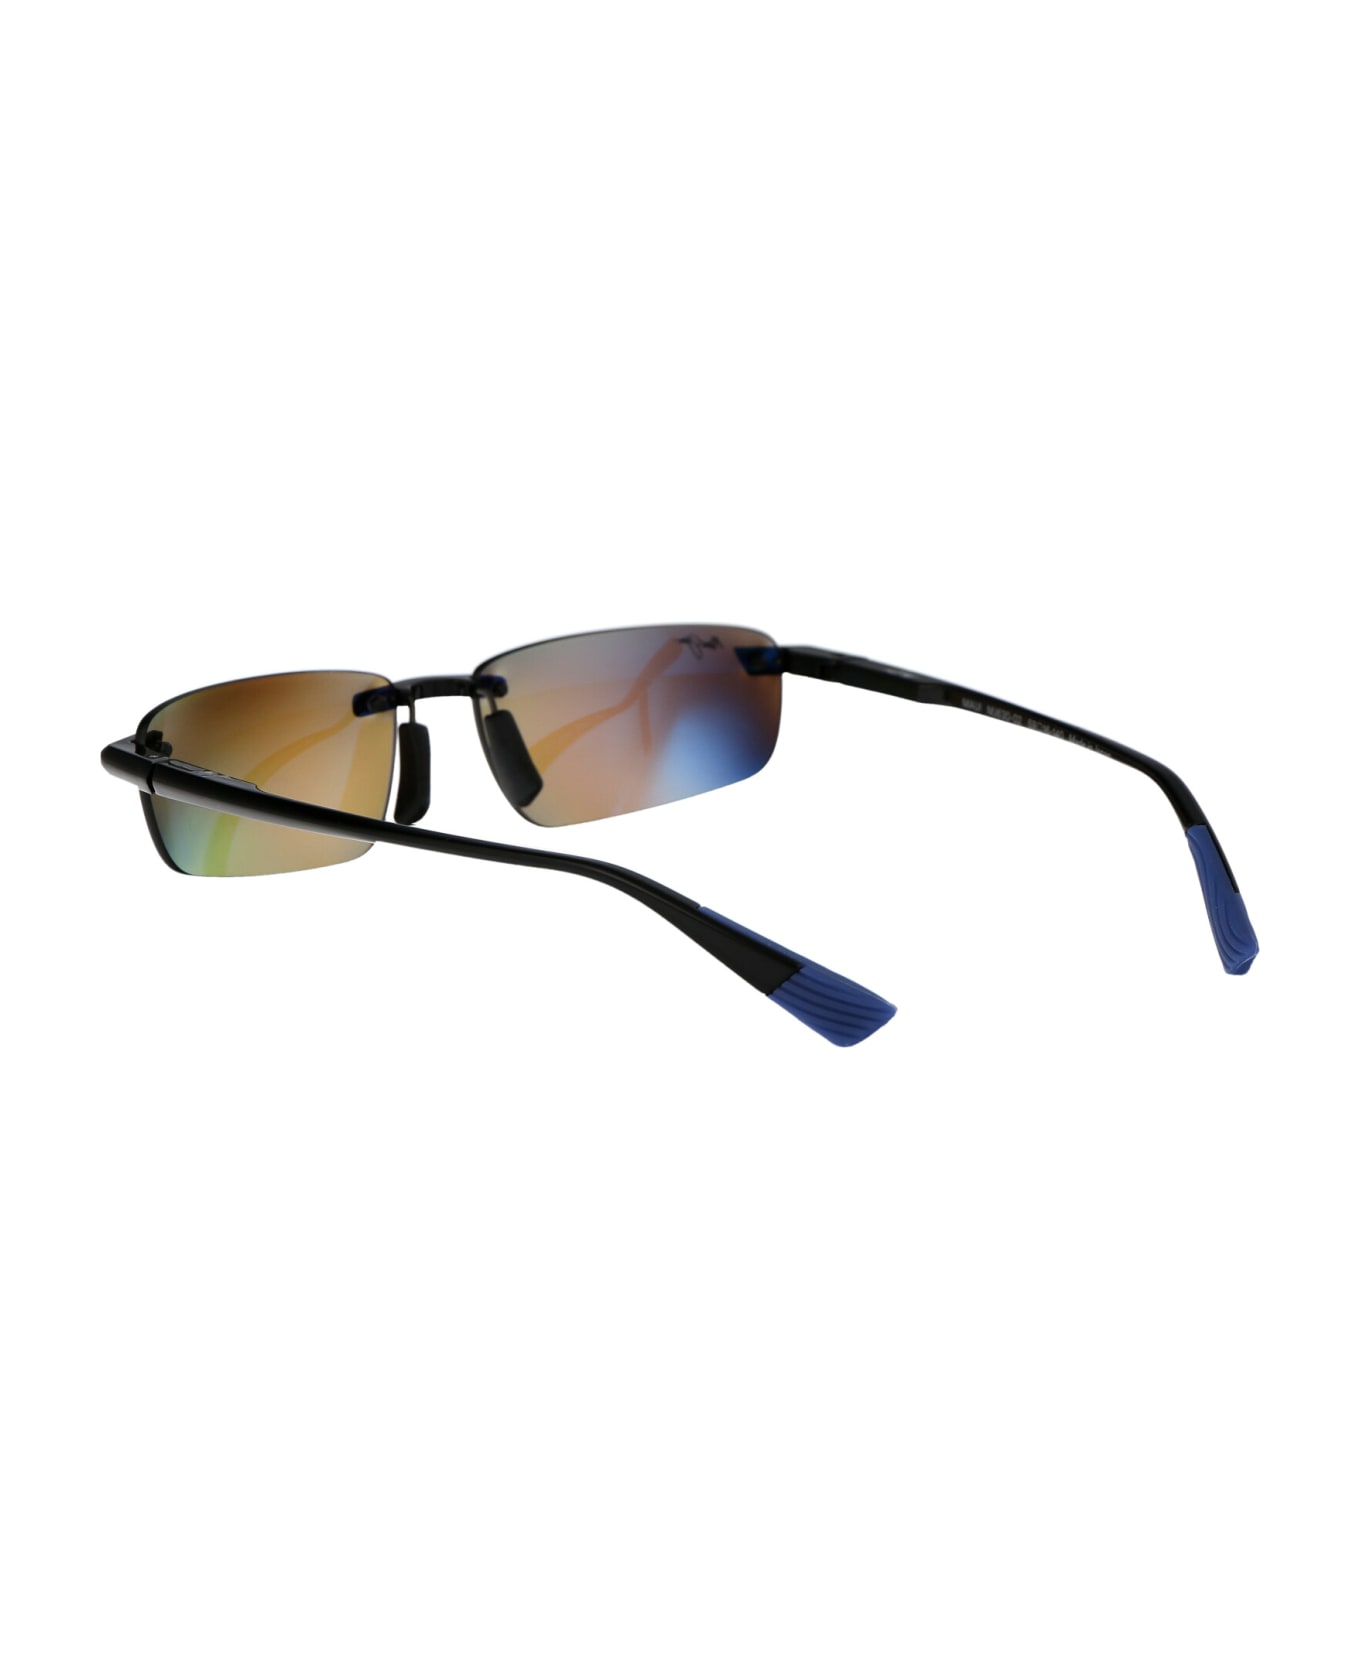 Maui Jim Ilikou Sunglasses - 02 BLUE HAWAII ILIKOU SHINY BLACK W/ BLUE サングラス